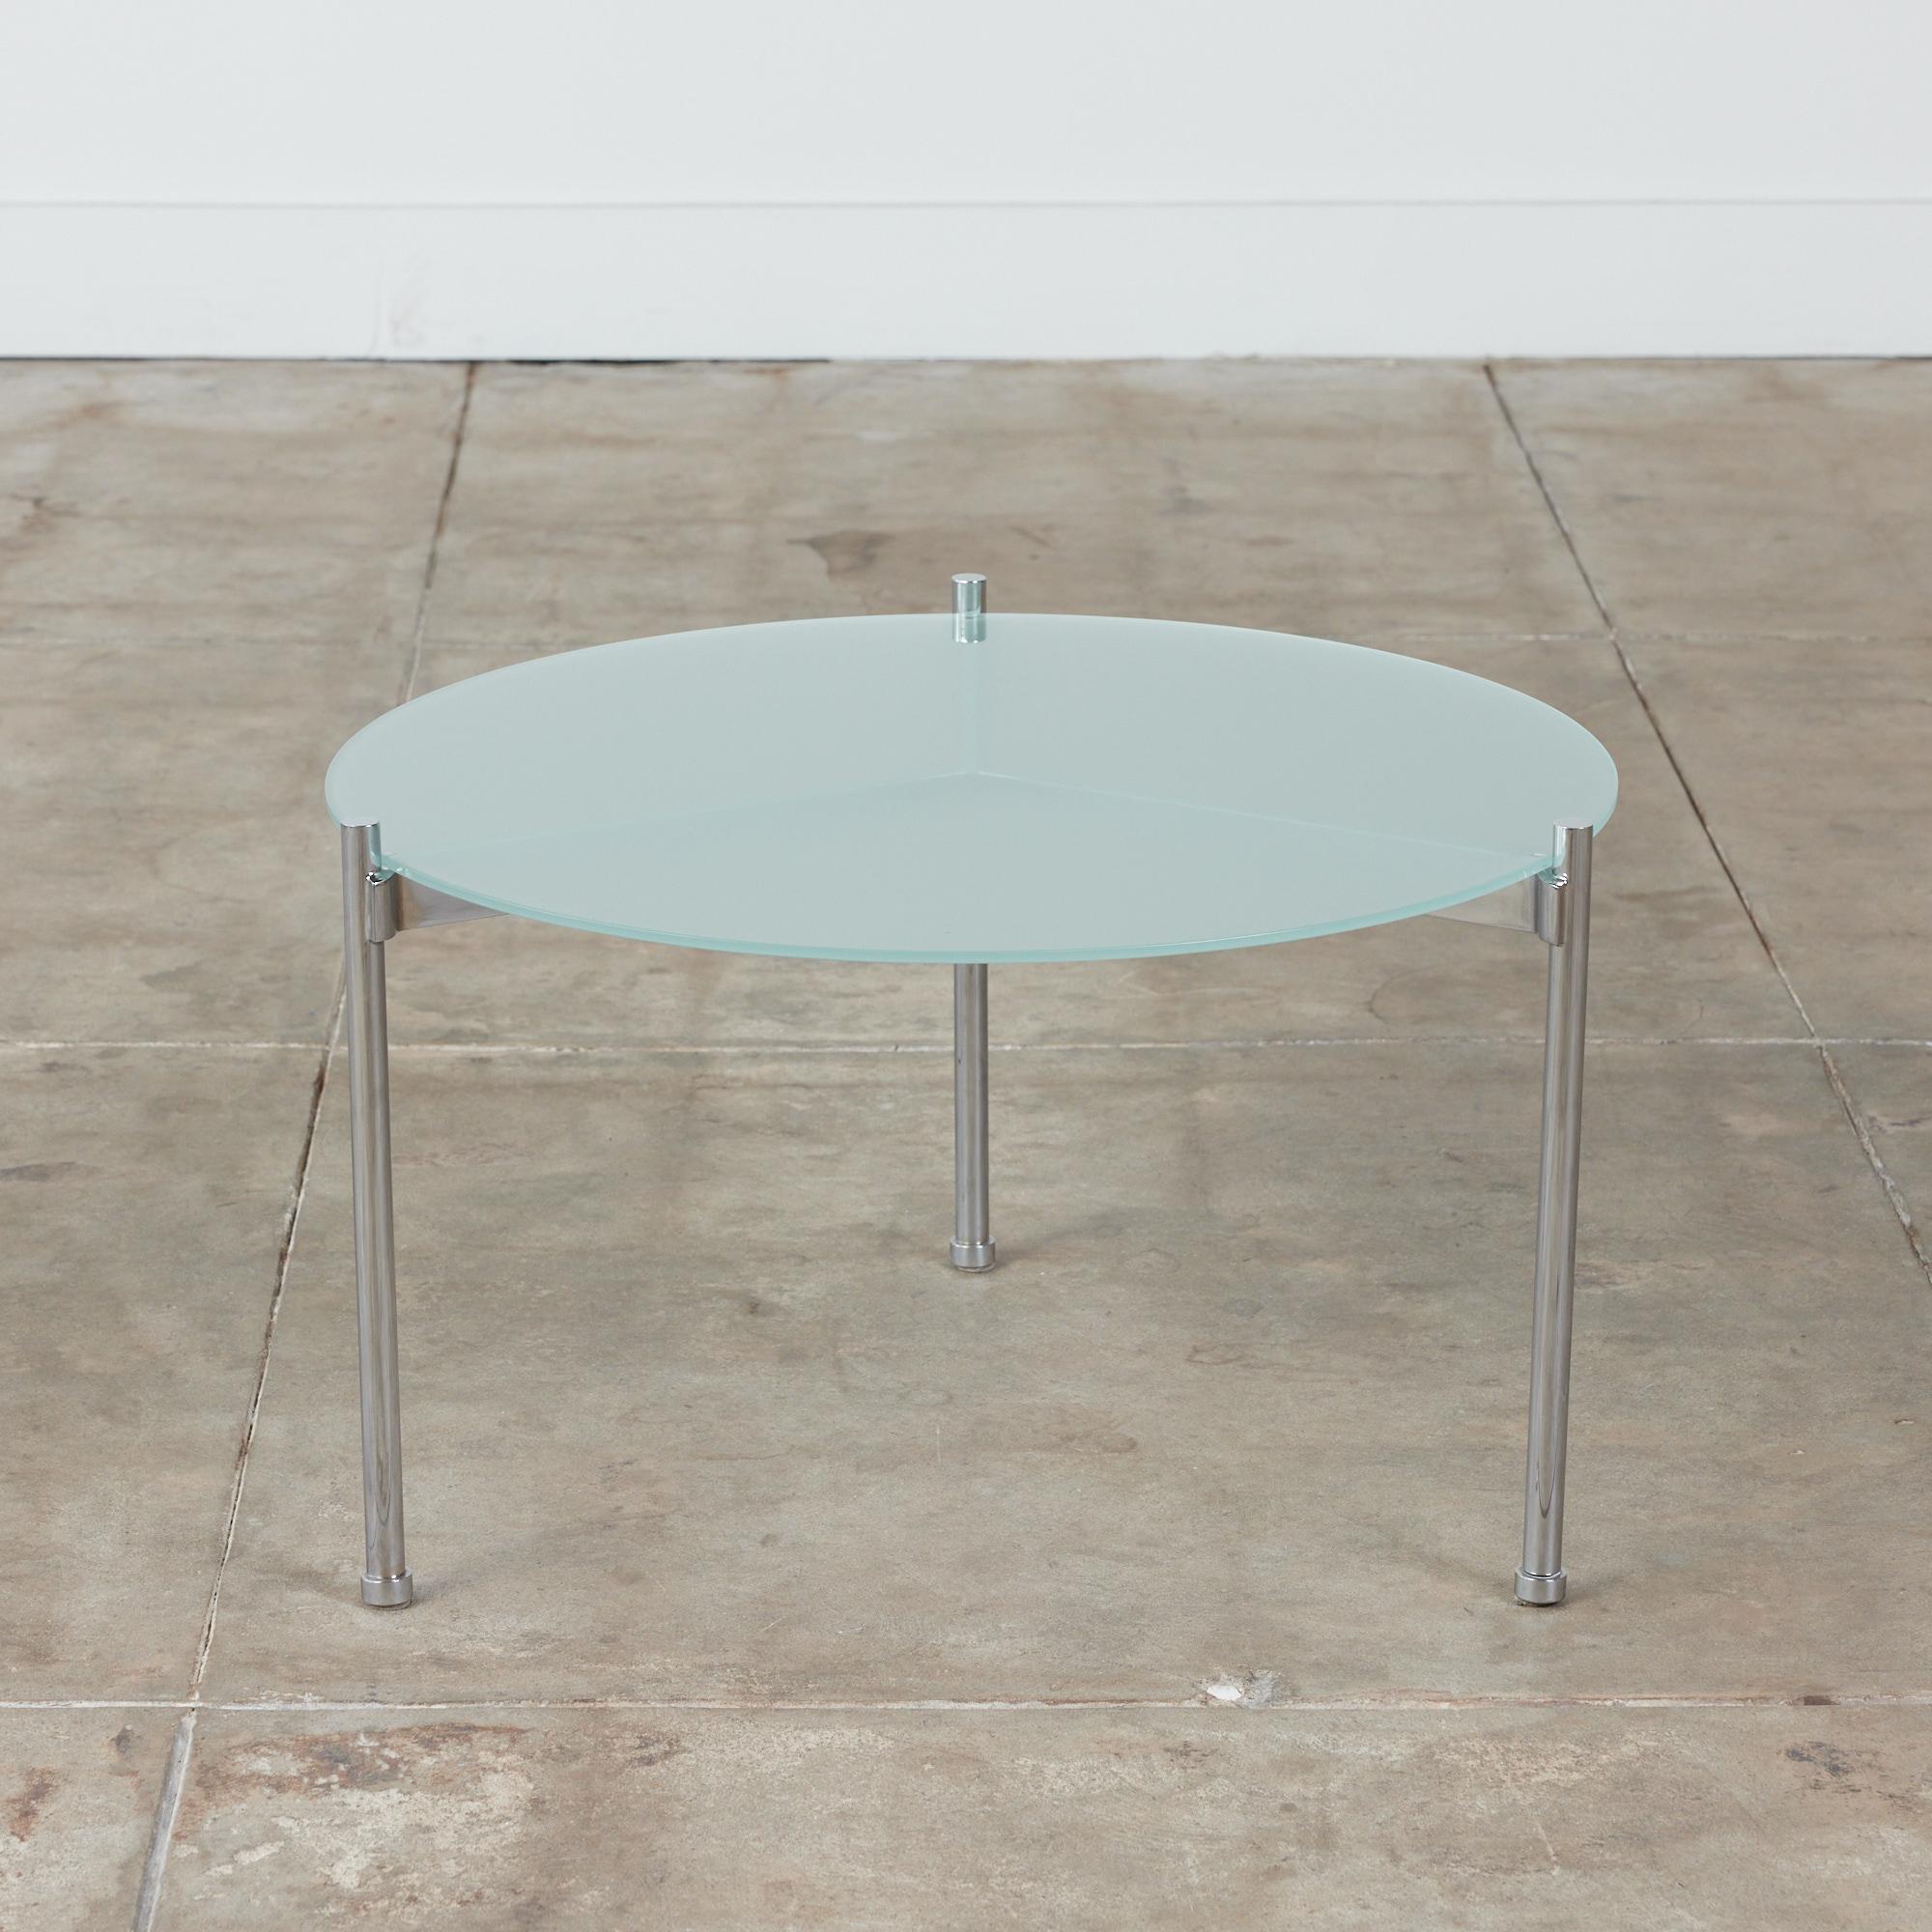 Minimalistischer Beistelltisch von Ward Bennett für Brickel Associates, ca. 1970er Jahre, USA. Der runde Tisch besteht aus einem verchromten Stahlgestell mit drei Rohrbeinen. Seinen Namen verdankt der Tisch den drei Auslegern, die direkt unter der